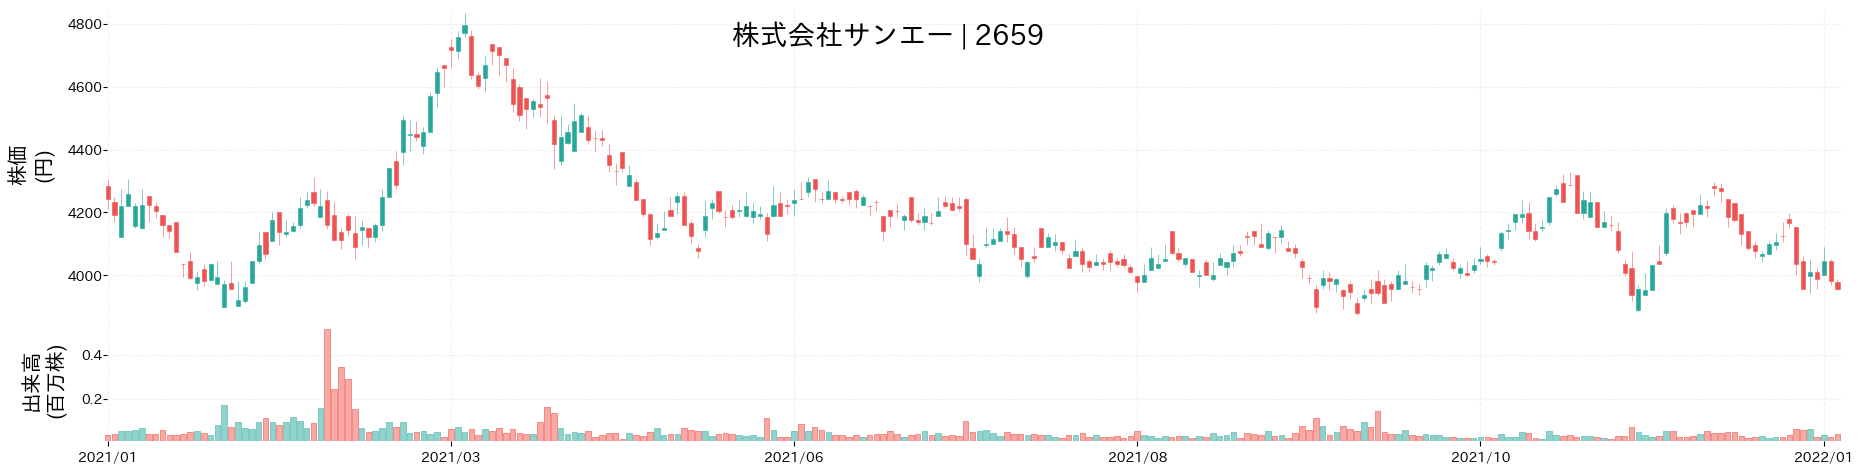 サンエーの株価推移(2021)